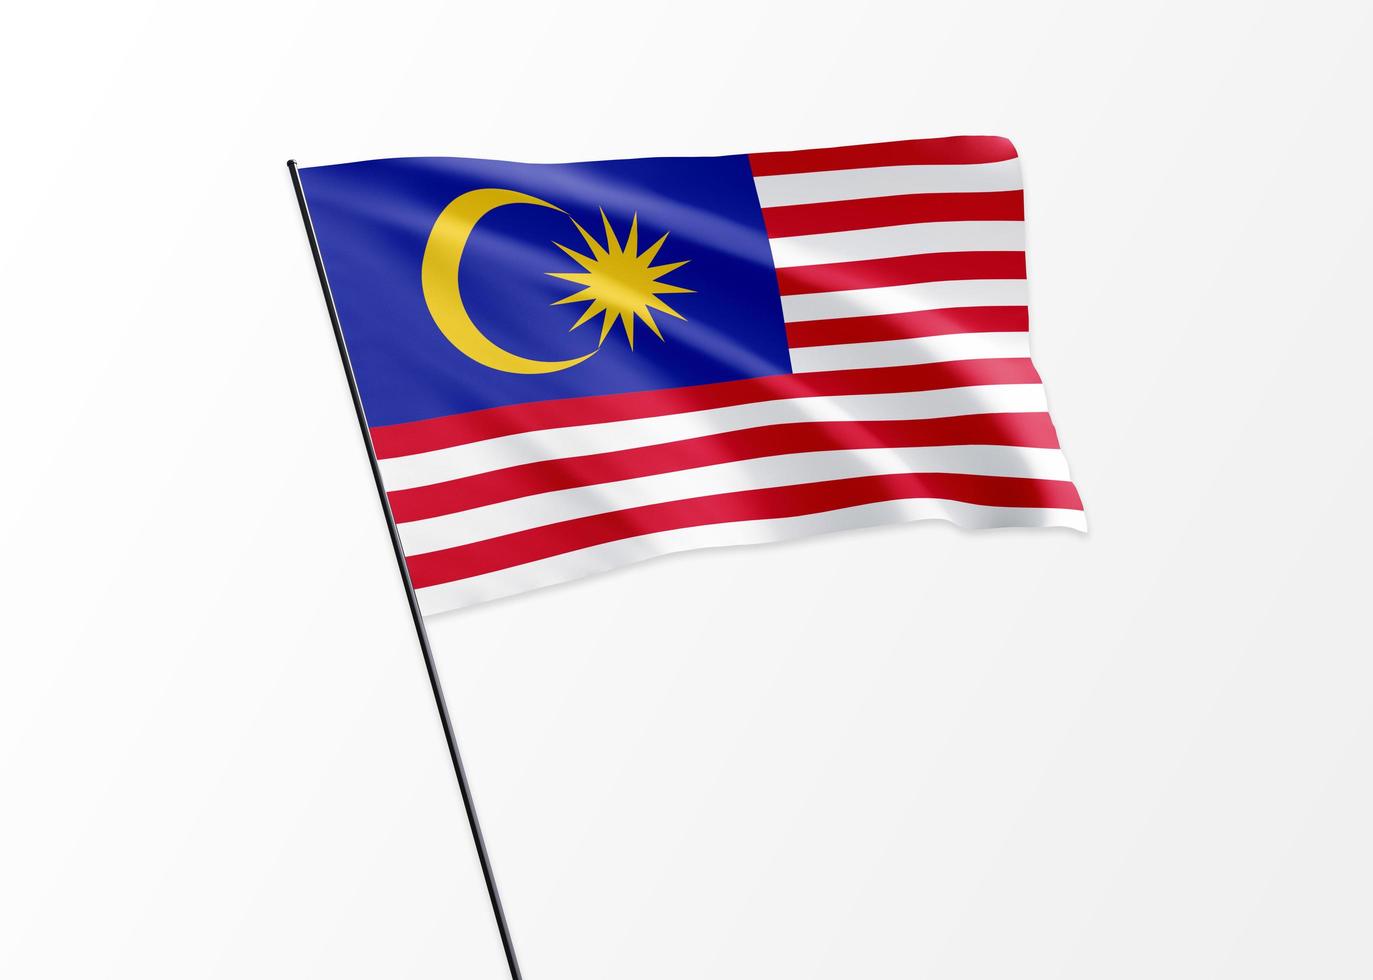 bandeira da Malásia voando alto no dia da independência da Malásia de fundo isolado. Coleção da bandeira nacional mundial ilustração 3D foto